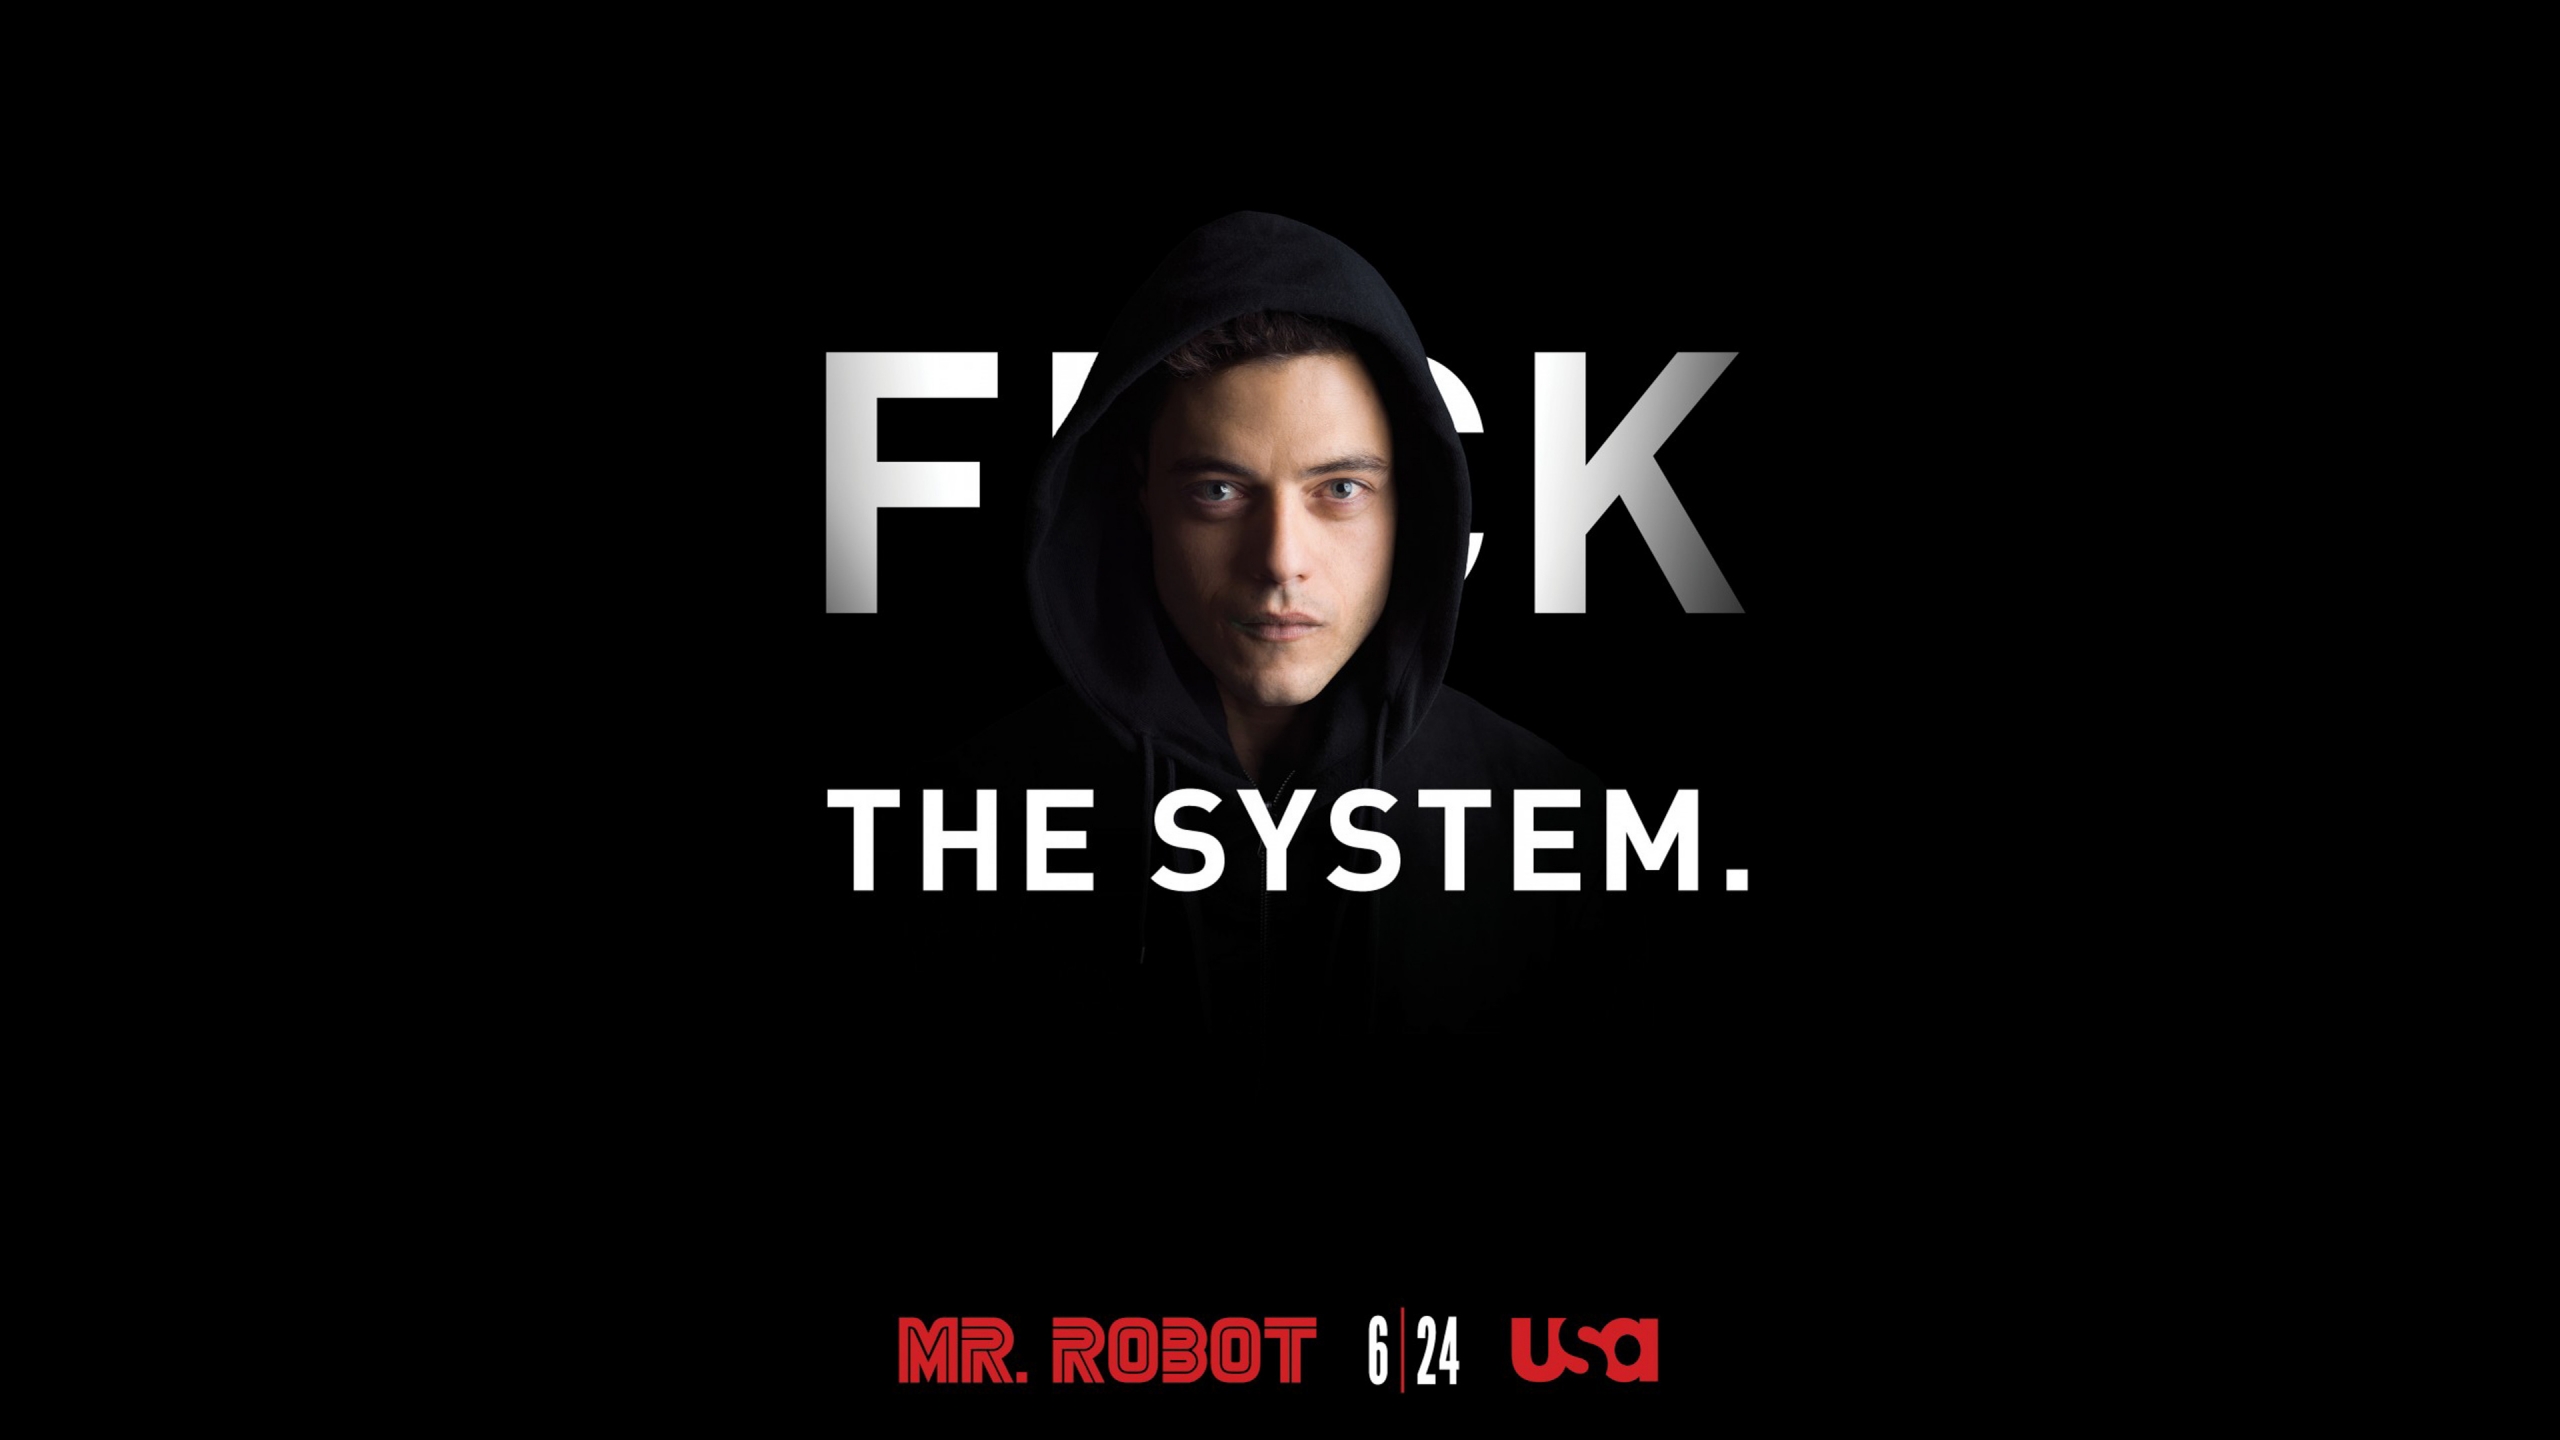 Mr Robot Season 2 for 2560x1440 HDTV resolution